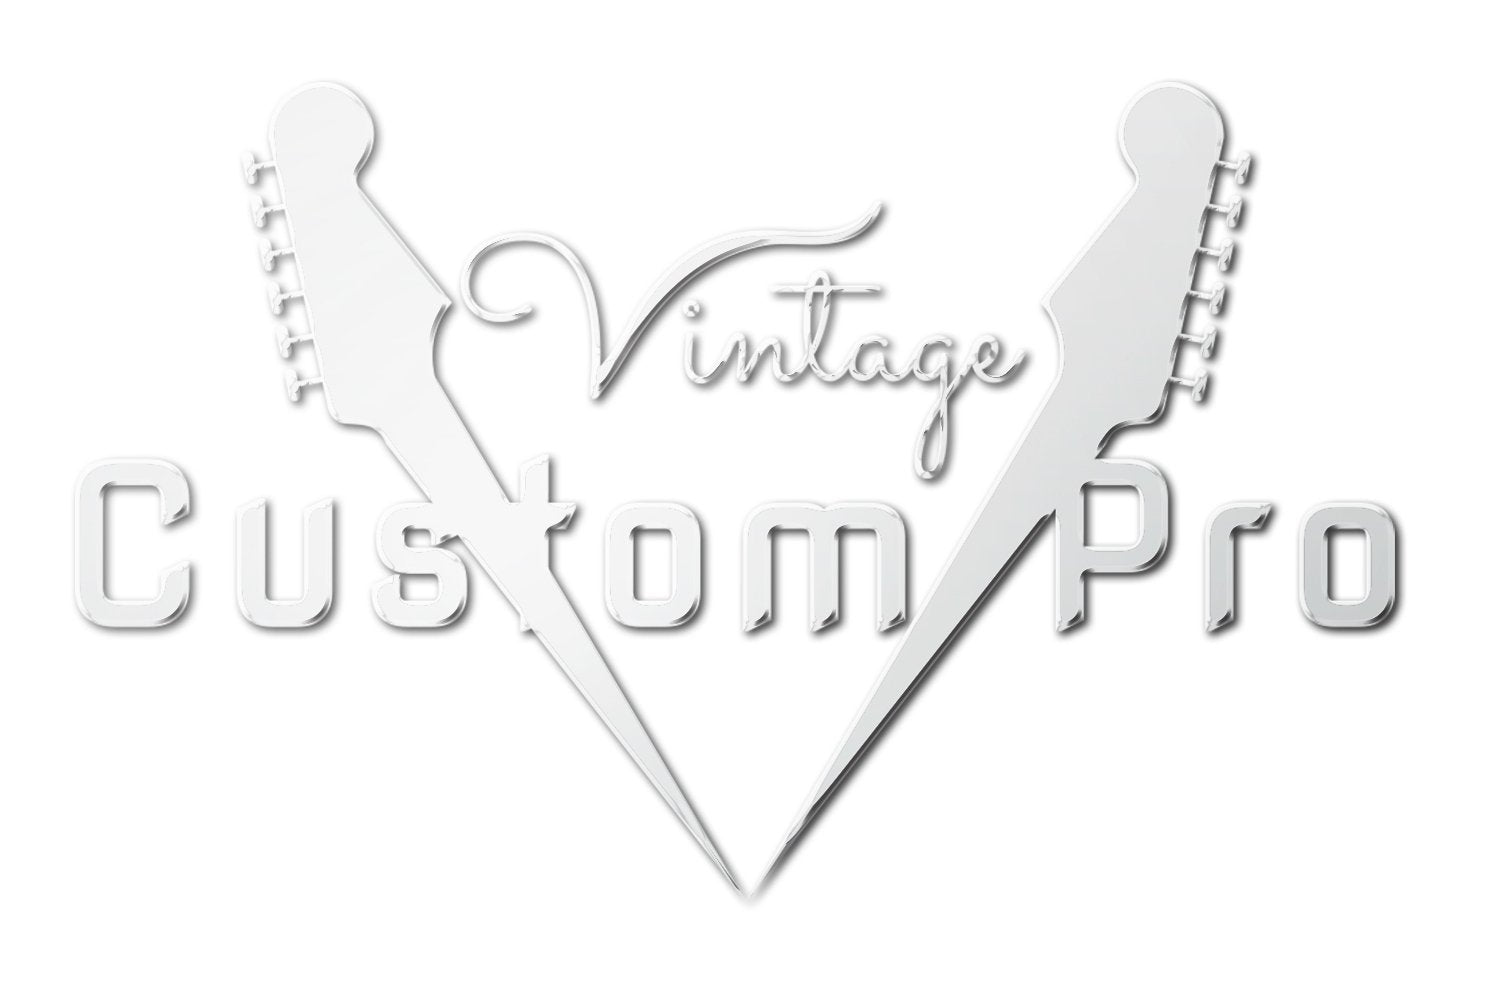 Vintage* V58JDAB Electric Guitar, Electric Guitar for sale at Richards Guitars.